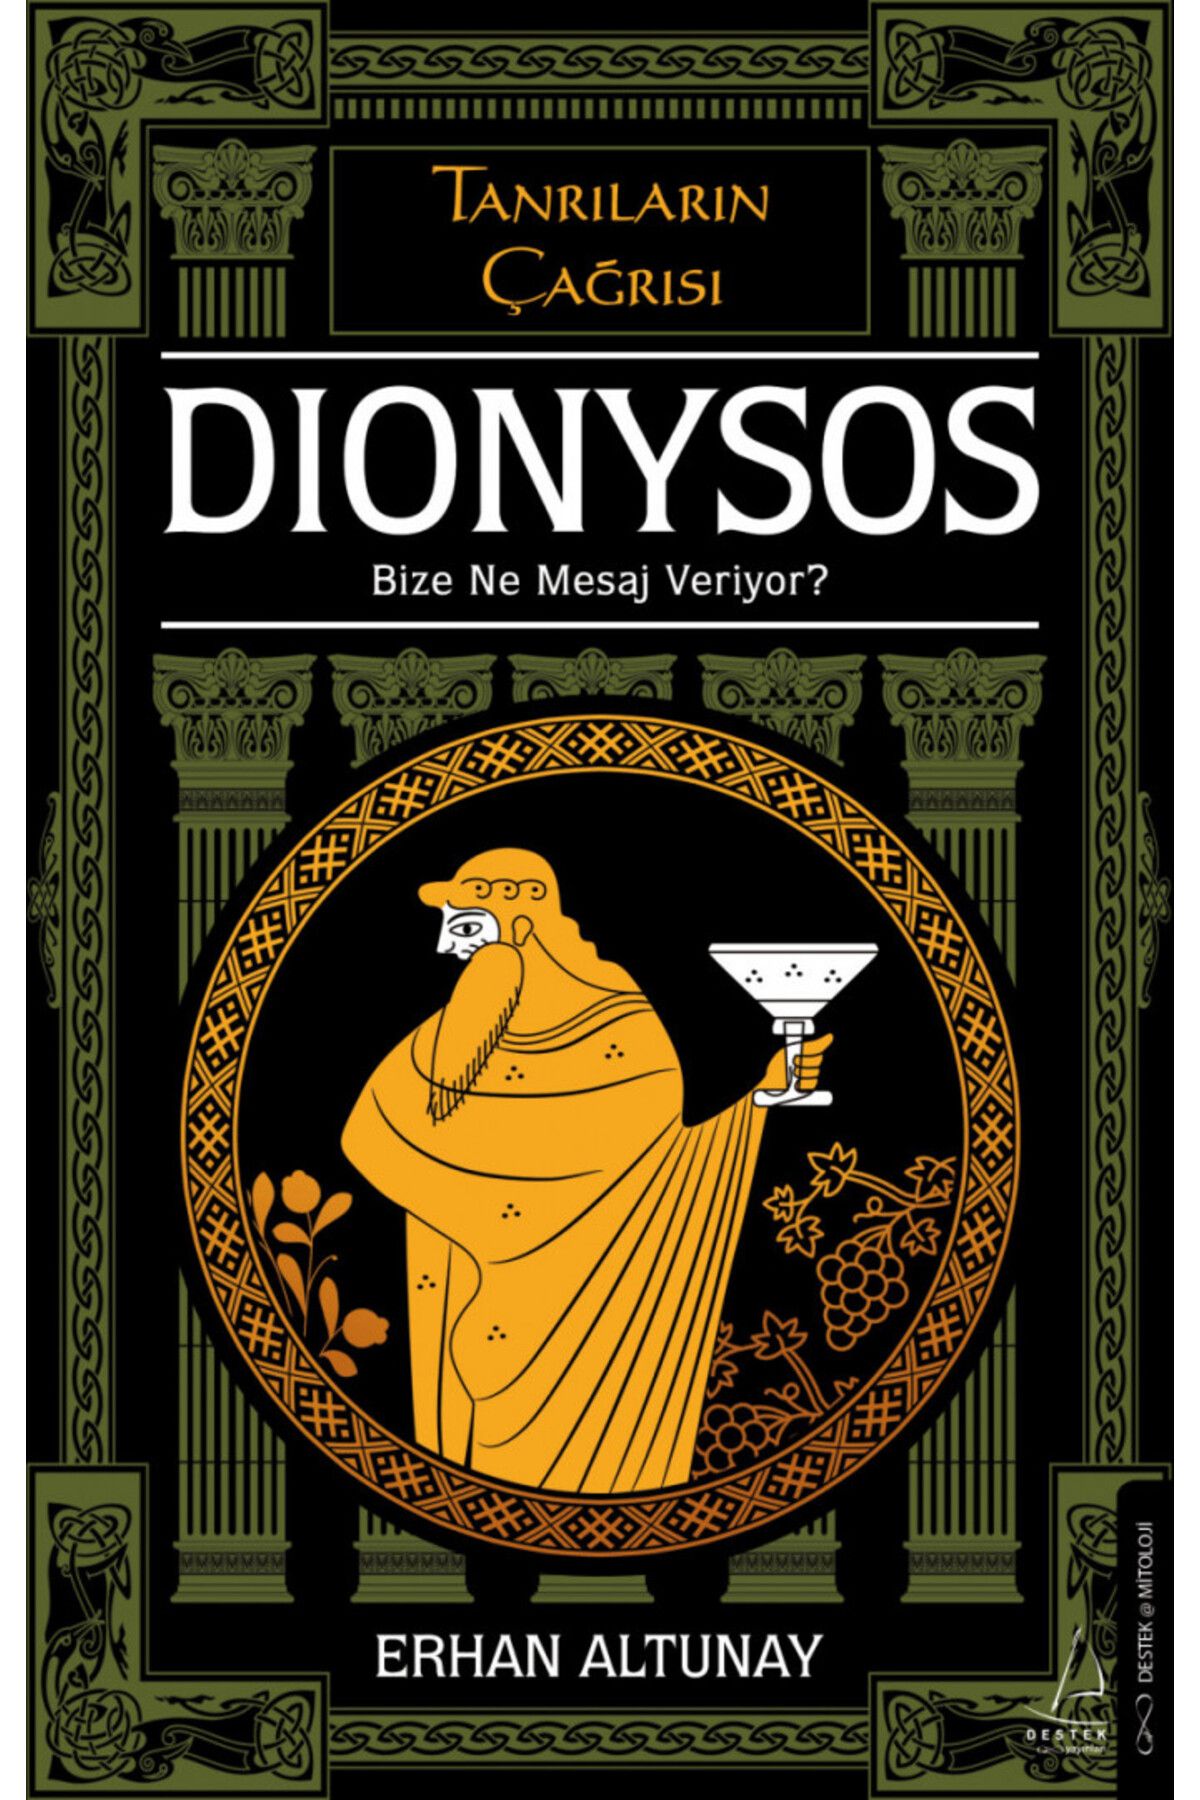 Destek Yayınları Dionysos Bize Ne Mesaj Veriyor? - Tanrıların Çağrısı